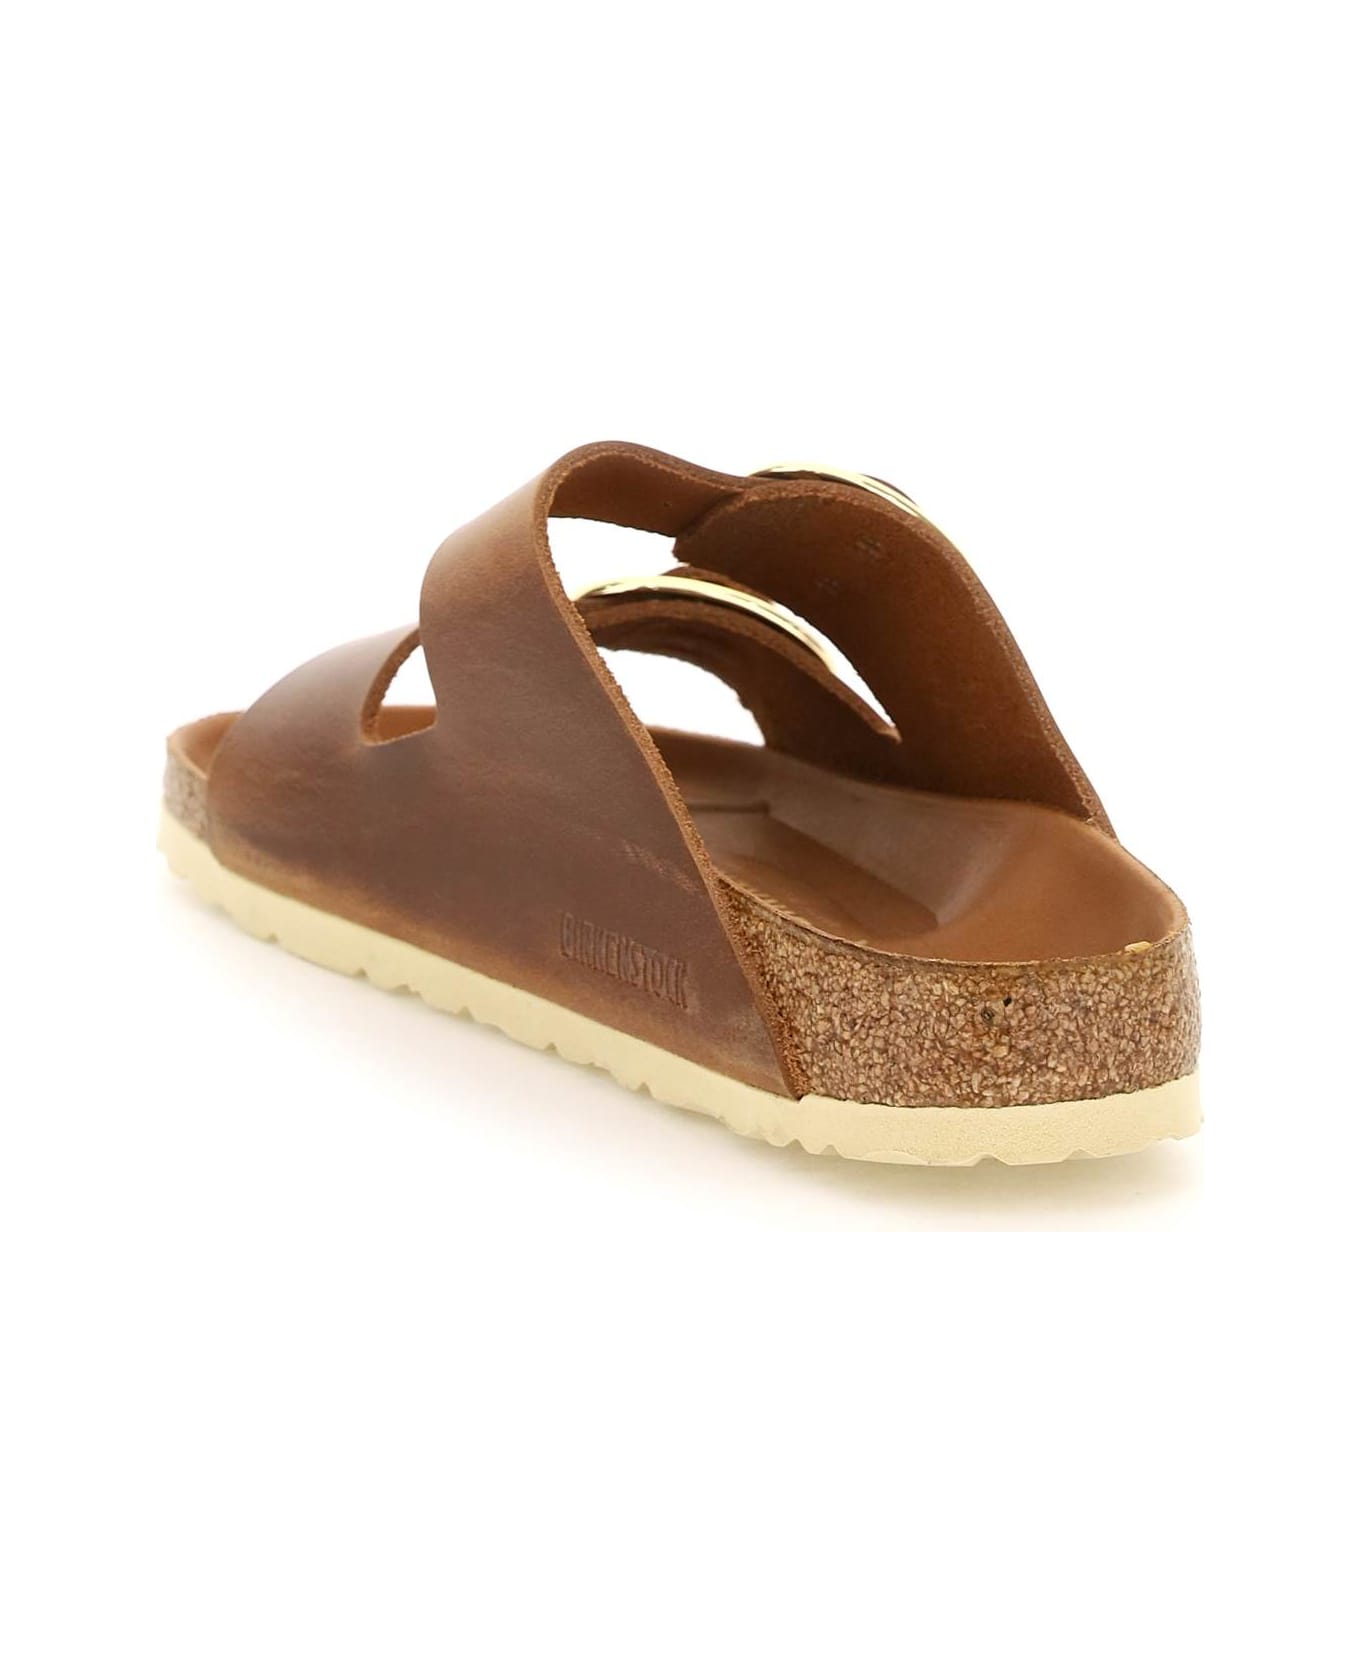 Birkenstock Sandals - Cognac サンダル